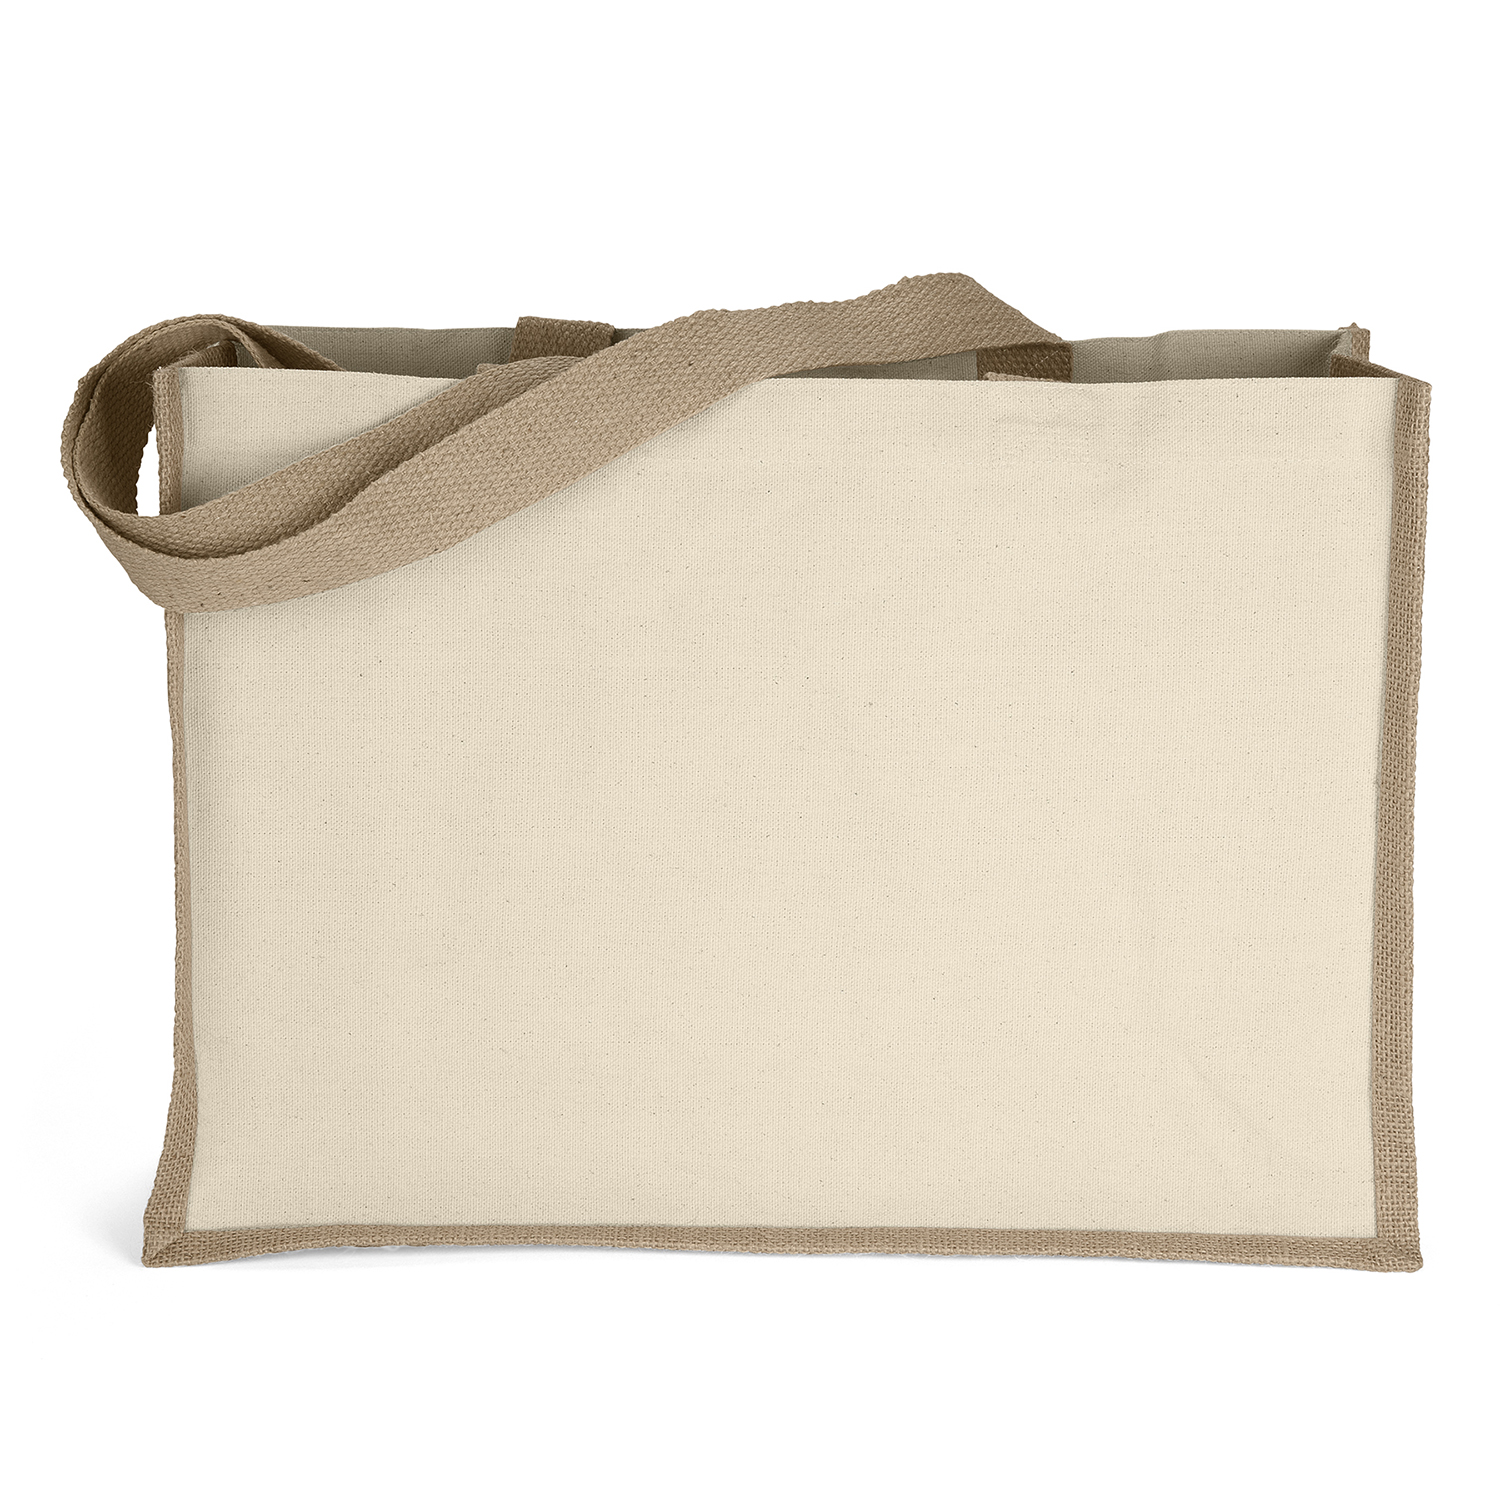 Bag Makers SPJO1712 - Custom Printed Reusable Laminated Tote Bag